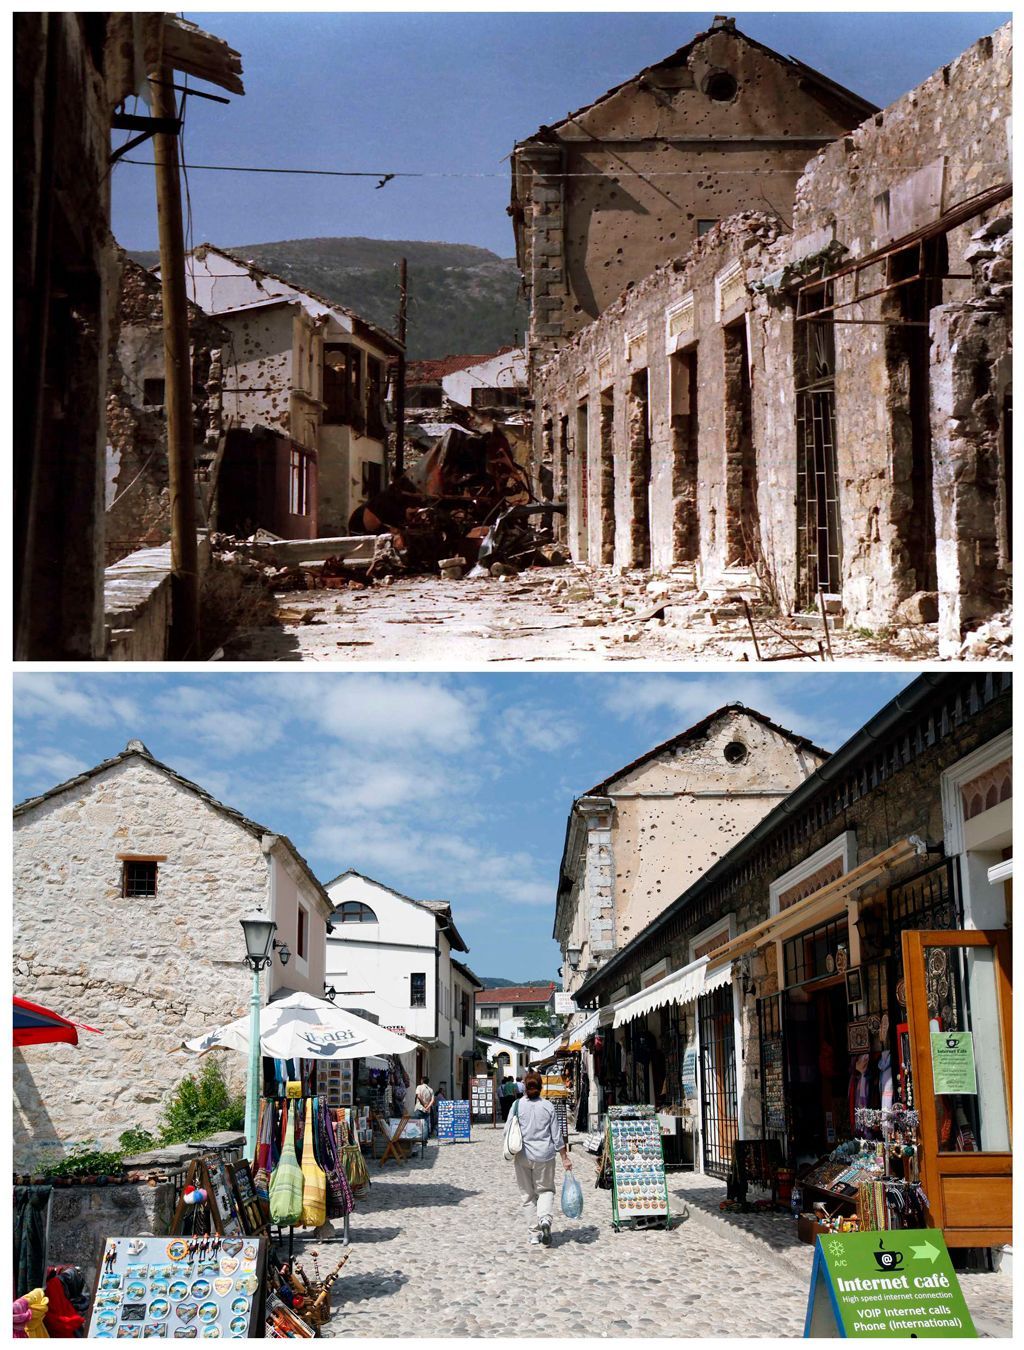 Bosna za války a dnes